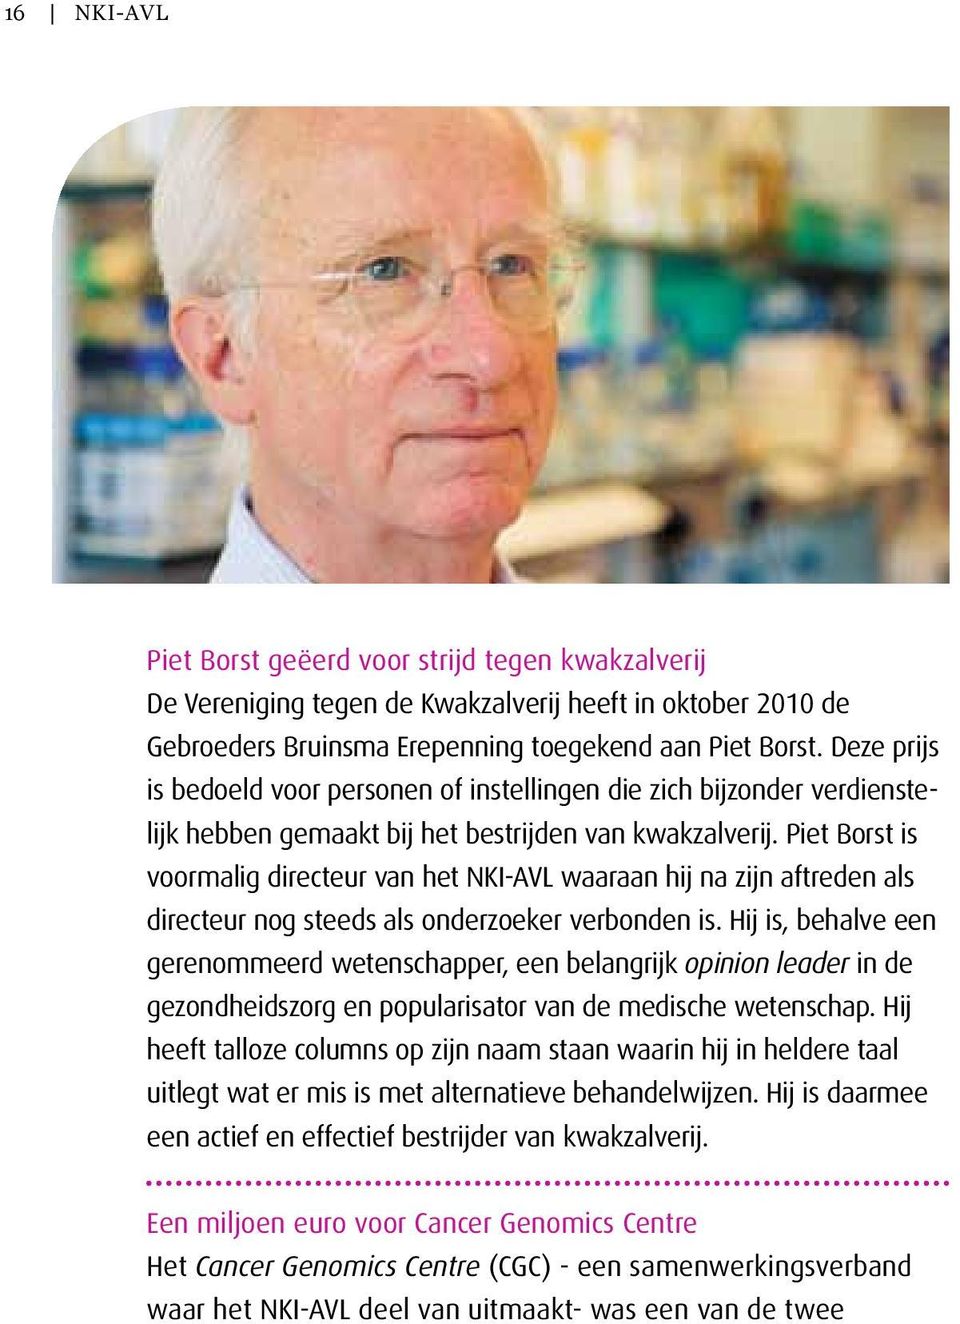 Piet Borst is voormalig directeur van het NKI-AVL waaraan hij na zijn aftreden als directeur nog steeds als onderzoeker verbonden is.